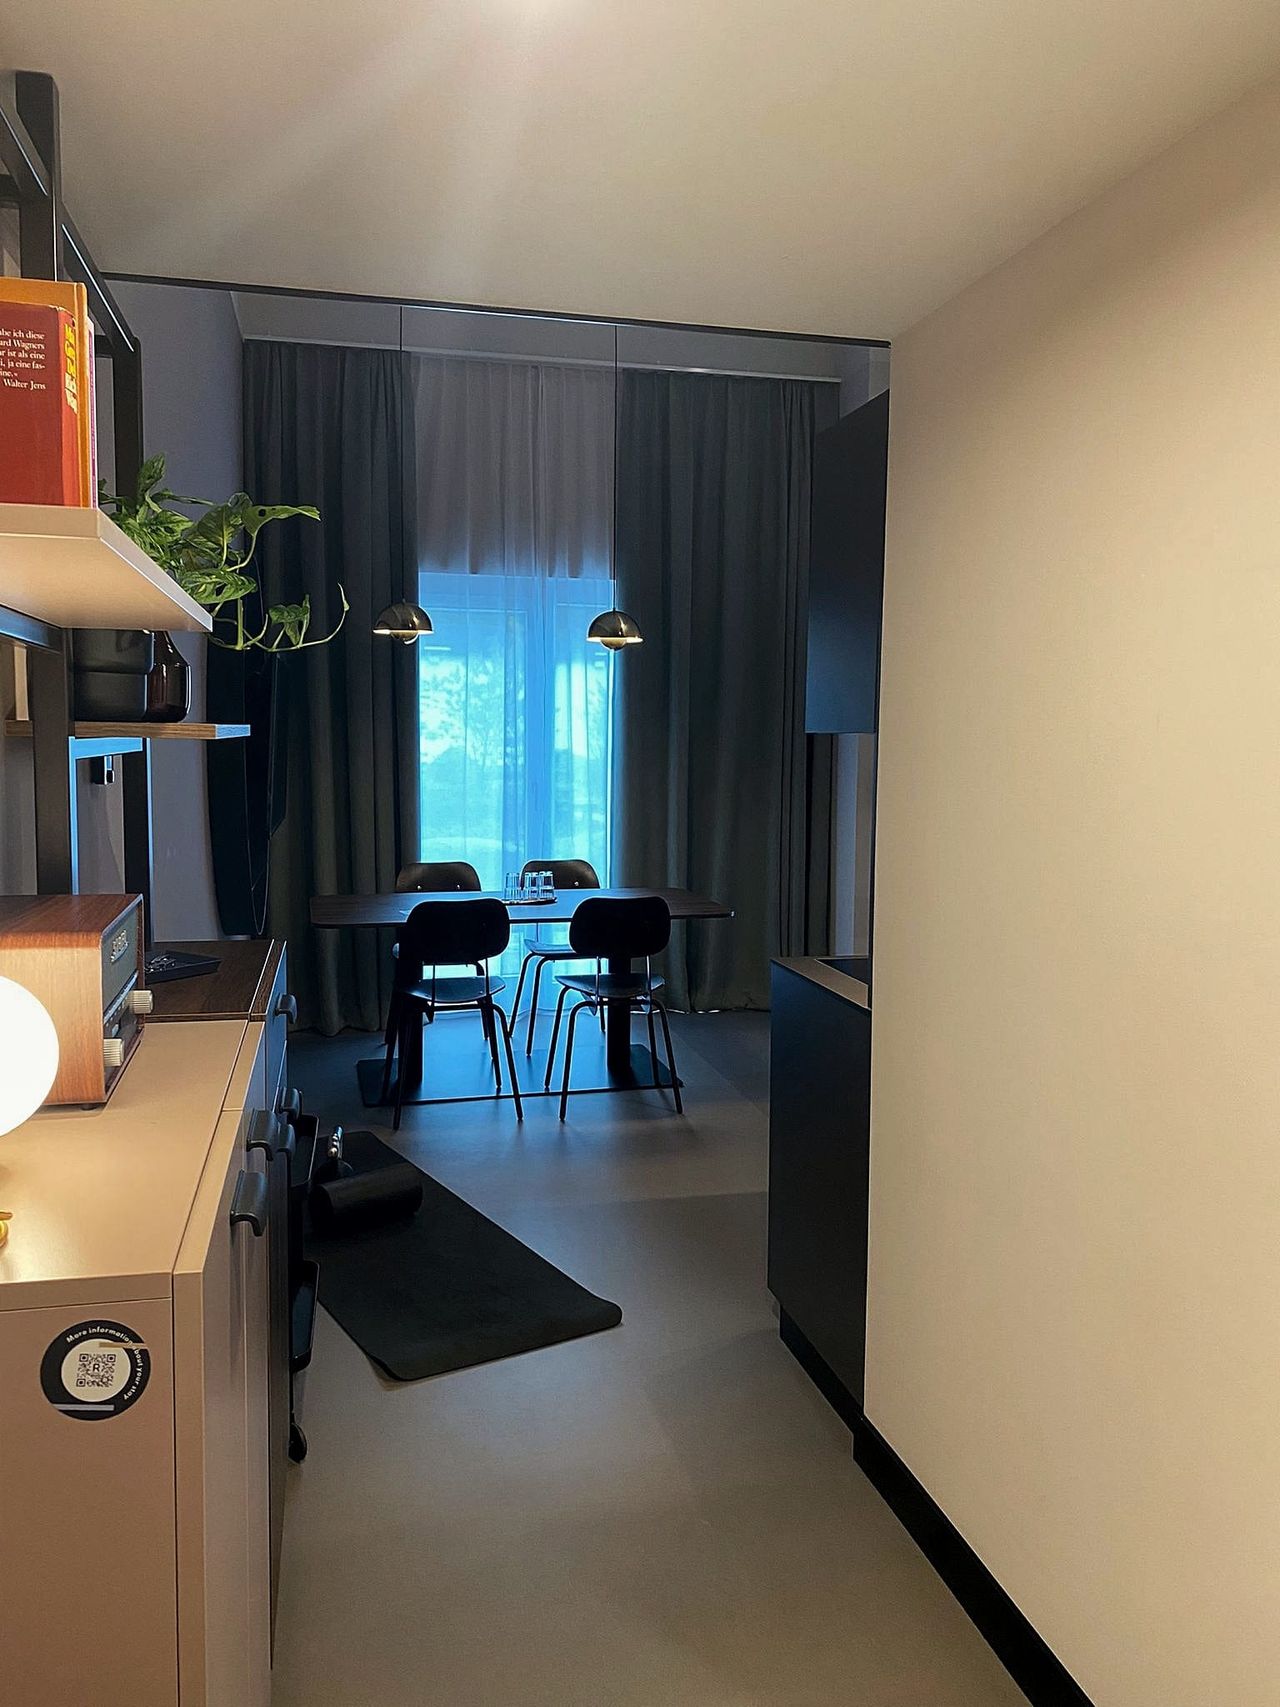 Tolles und modernes DUPLEX Serviced Apartment mit Terrasse in München inkl.Reinigung, Gym, WIFI, TV TAX, Social Spaces (Kino, etc.)und mehr!